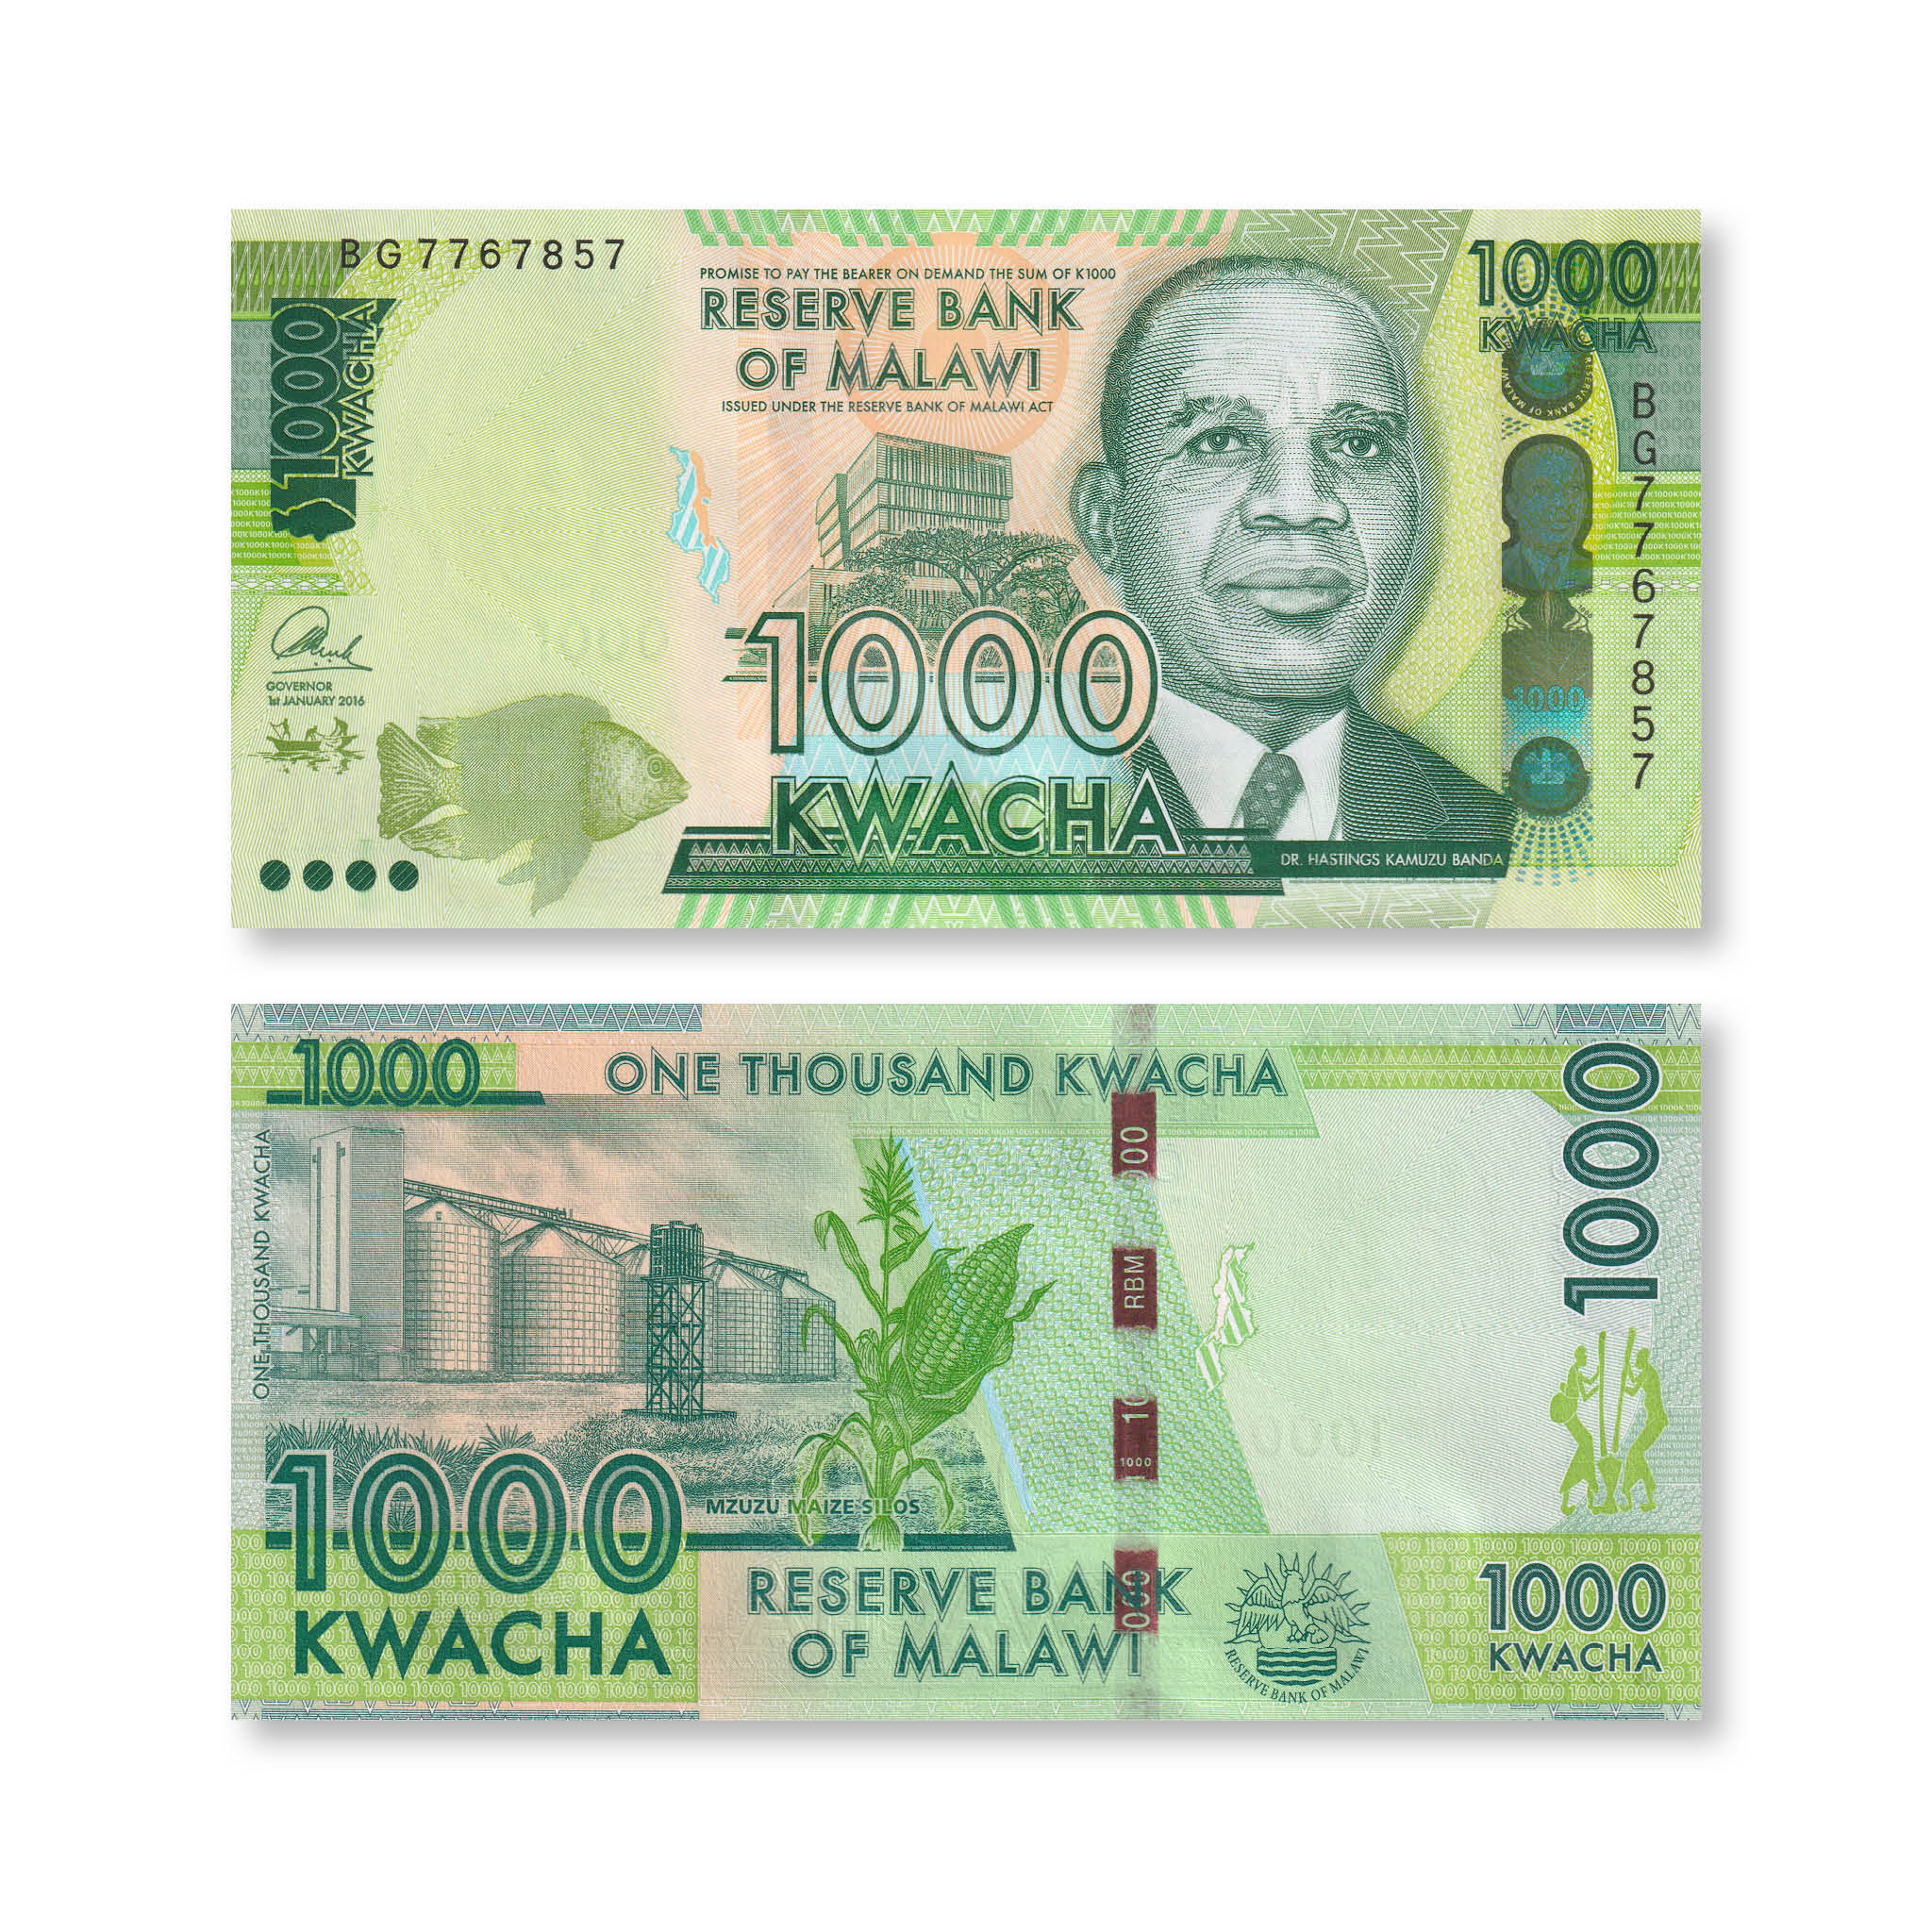 Malawi 1000 Kwacha, 2016, B162b, P67b, UNC - Robert's World Money - World Banknotes